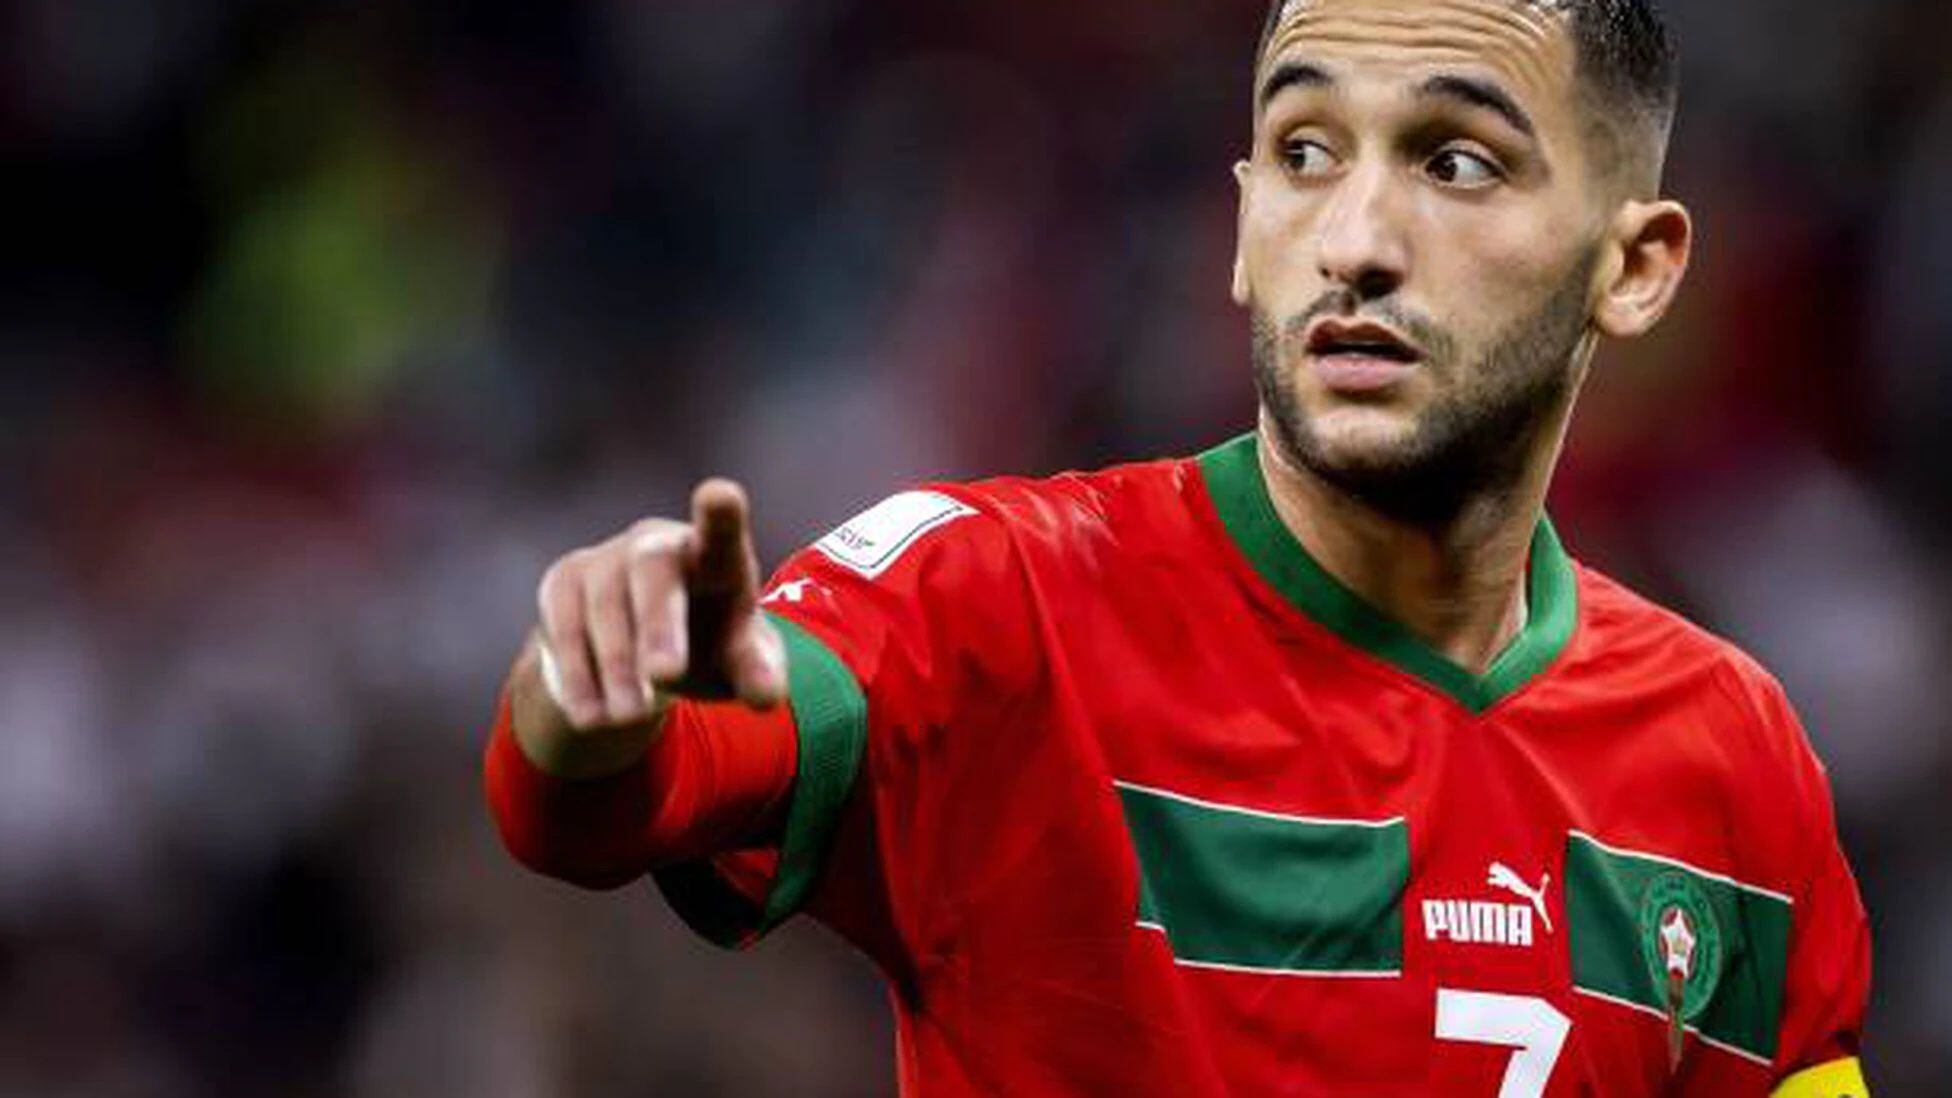 El dato curioso que ilusiona a Marruecos con ser campeón del mundo